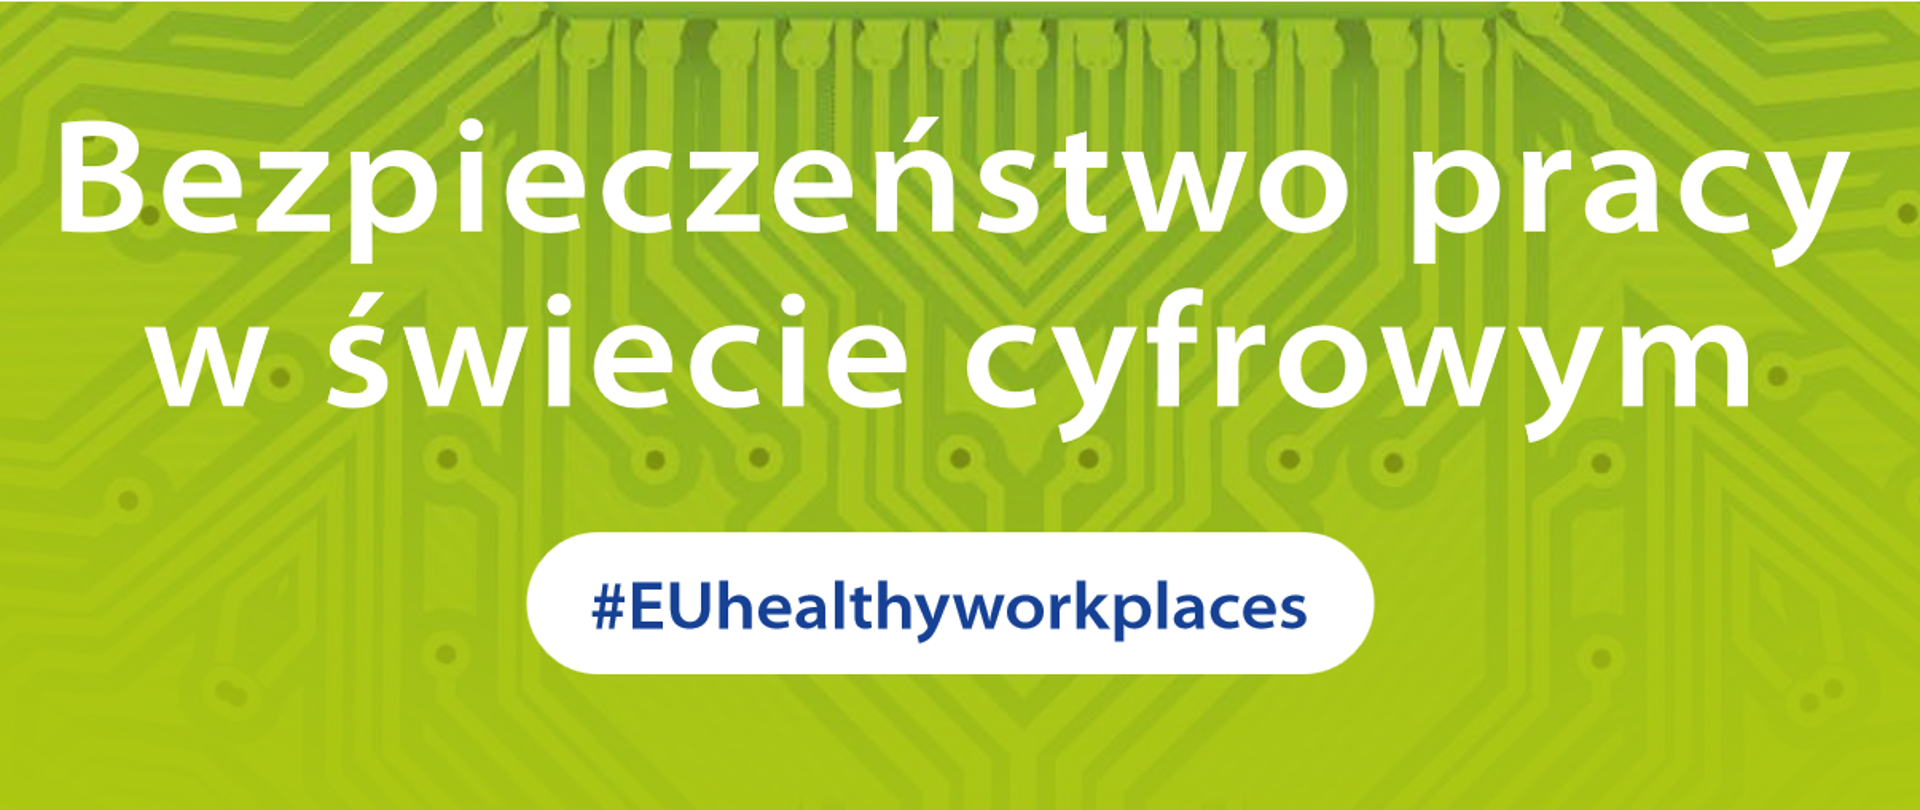 Na zielonym tle dużymi białymi literami napisano "Bezpieczeństwo pracy w świecie cyfrowym" pod spodem hasztag #EUheltlyworkplace